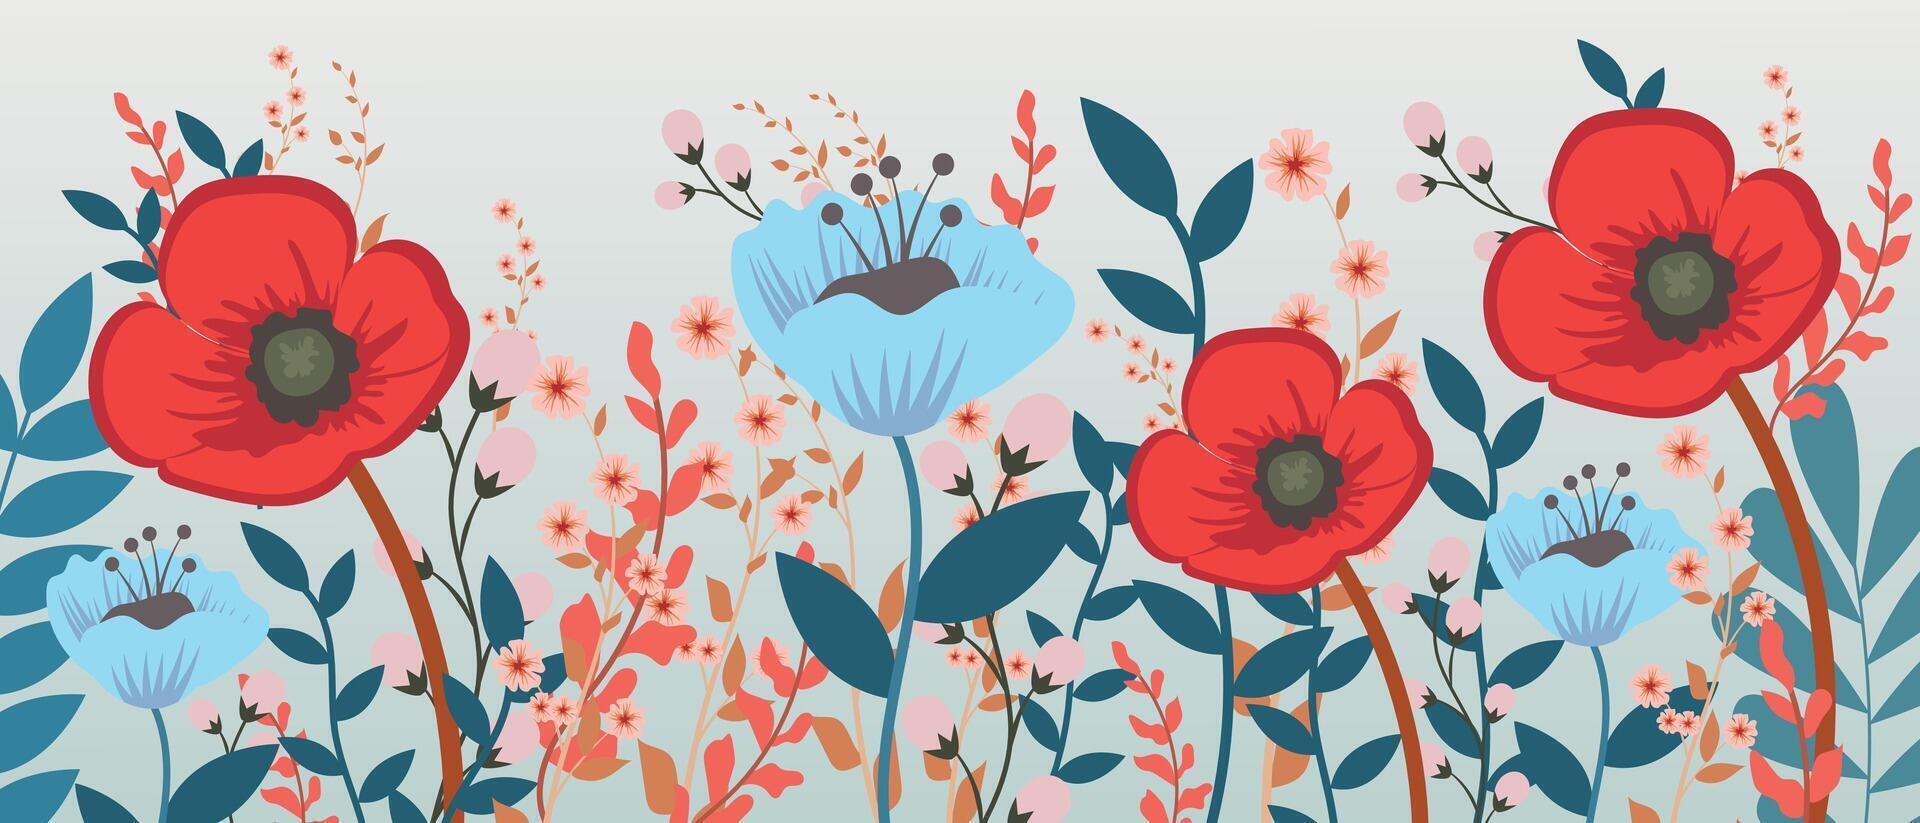 Frühling ist Hier, Vektor Karte mit hell Frühling Sommer- Blumen. Illustration mit Hand gezeichnet Blumen- Elemente.